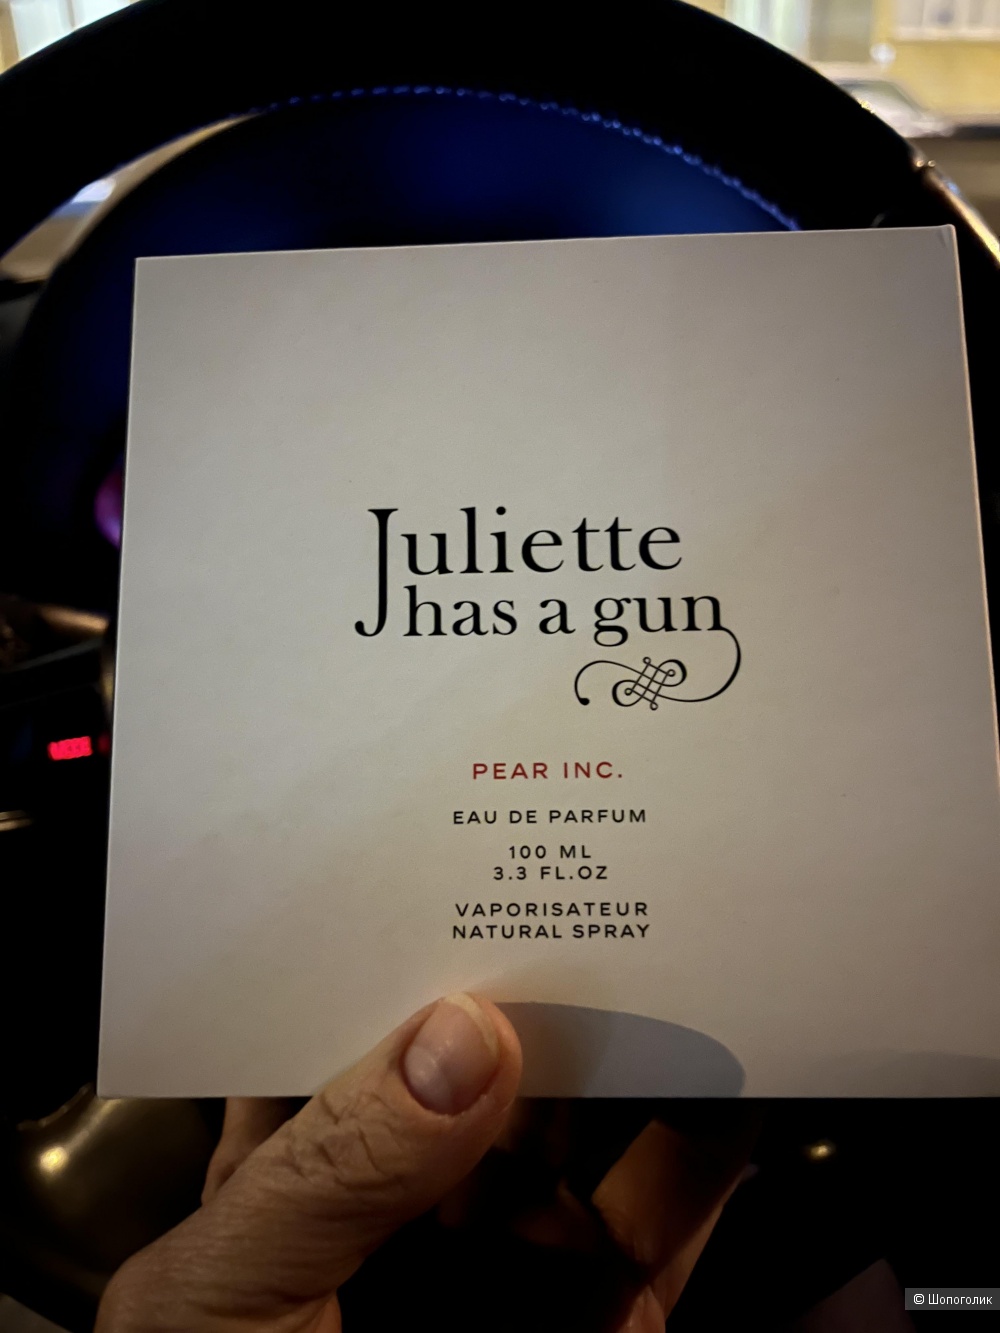 Парфюмерная вода  Juliette has a gun pear inc, 100мл